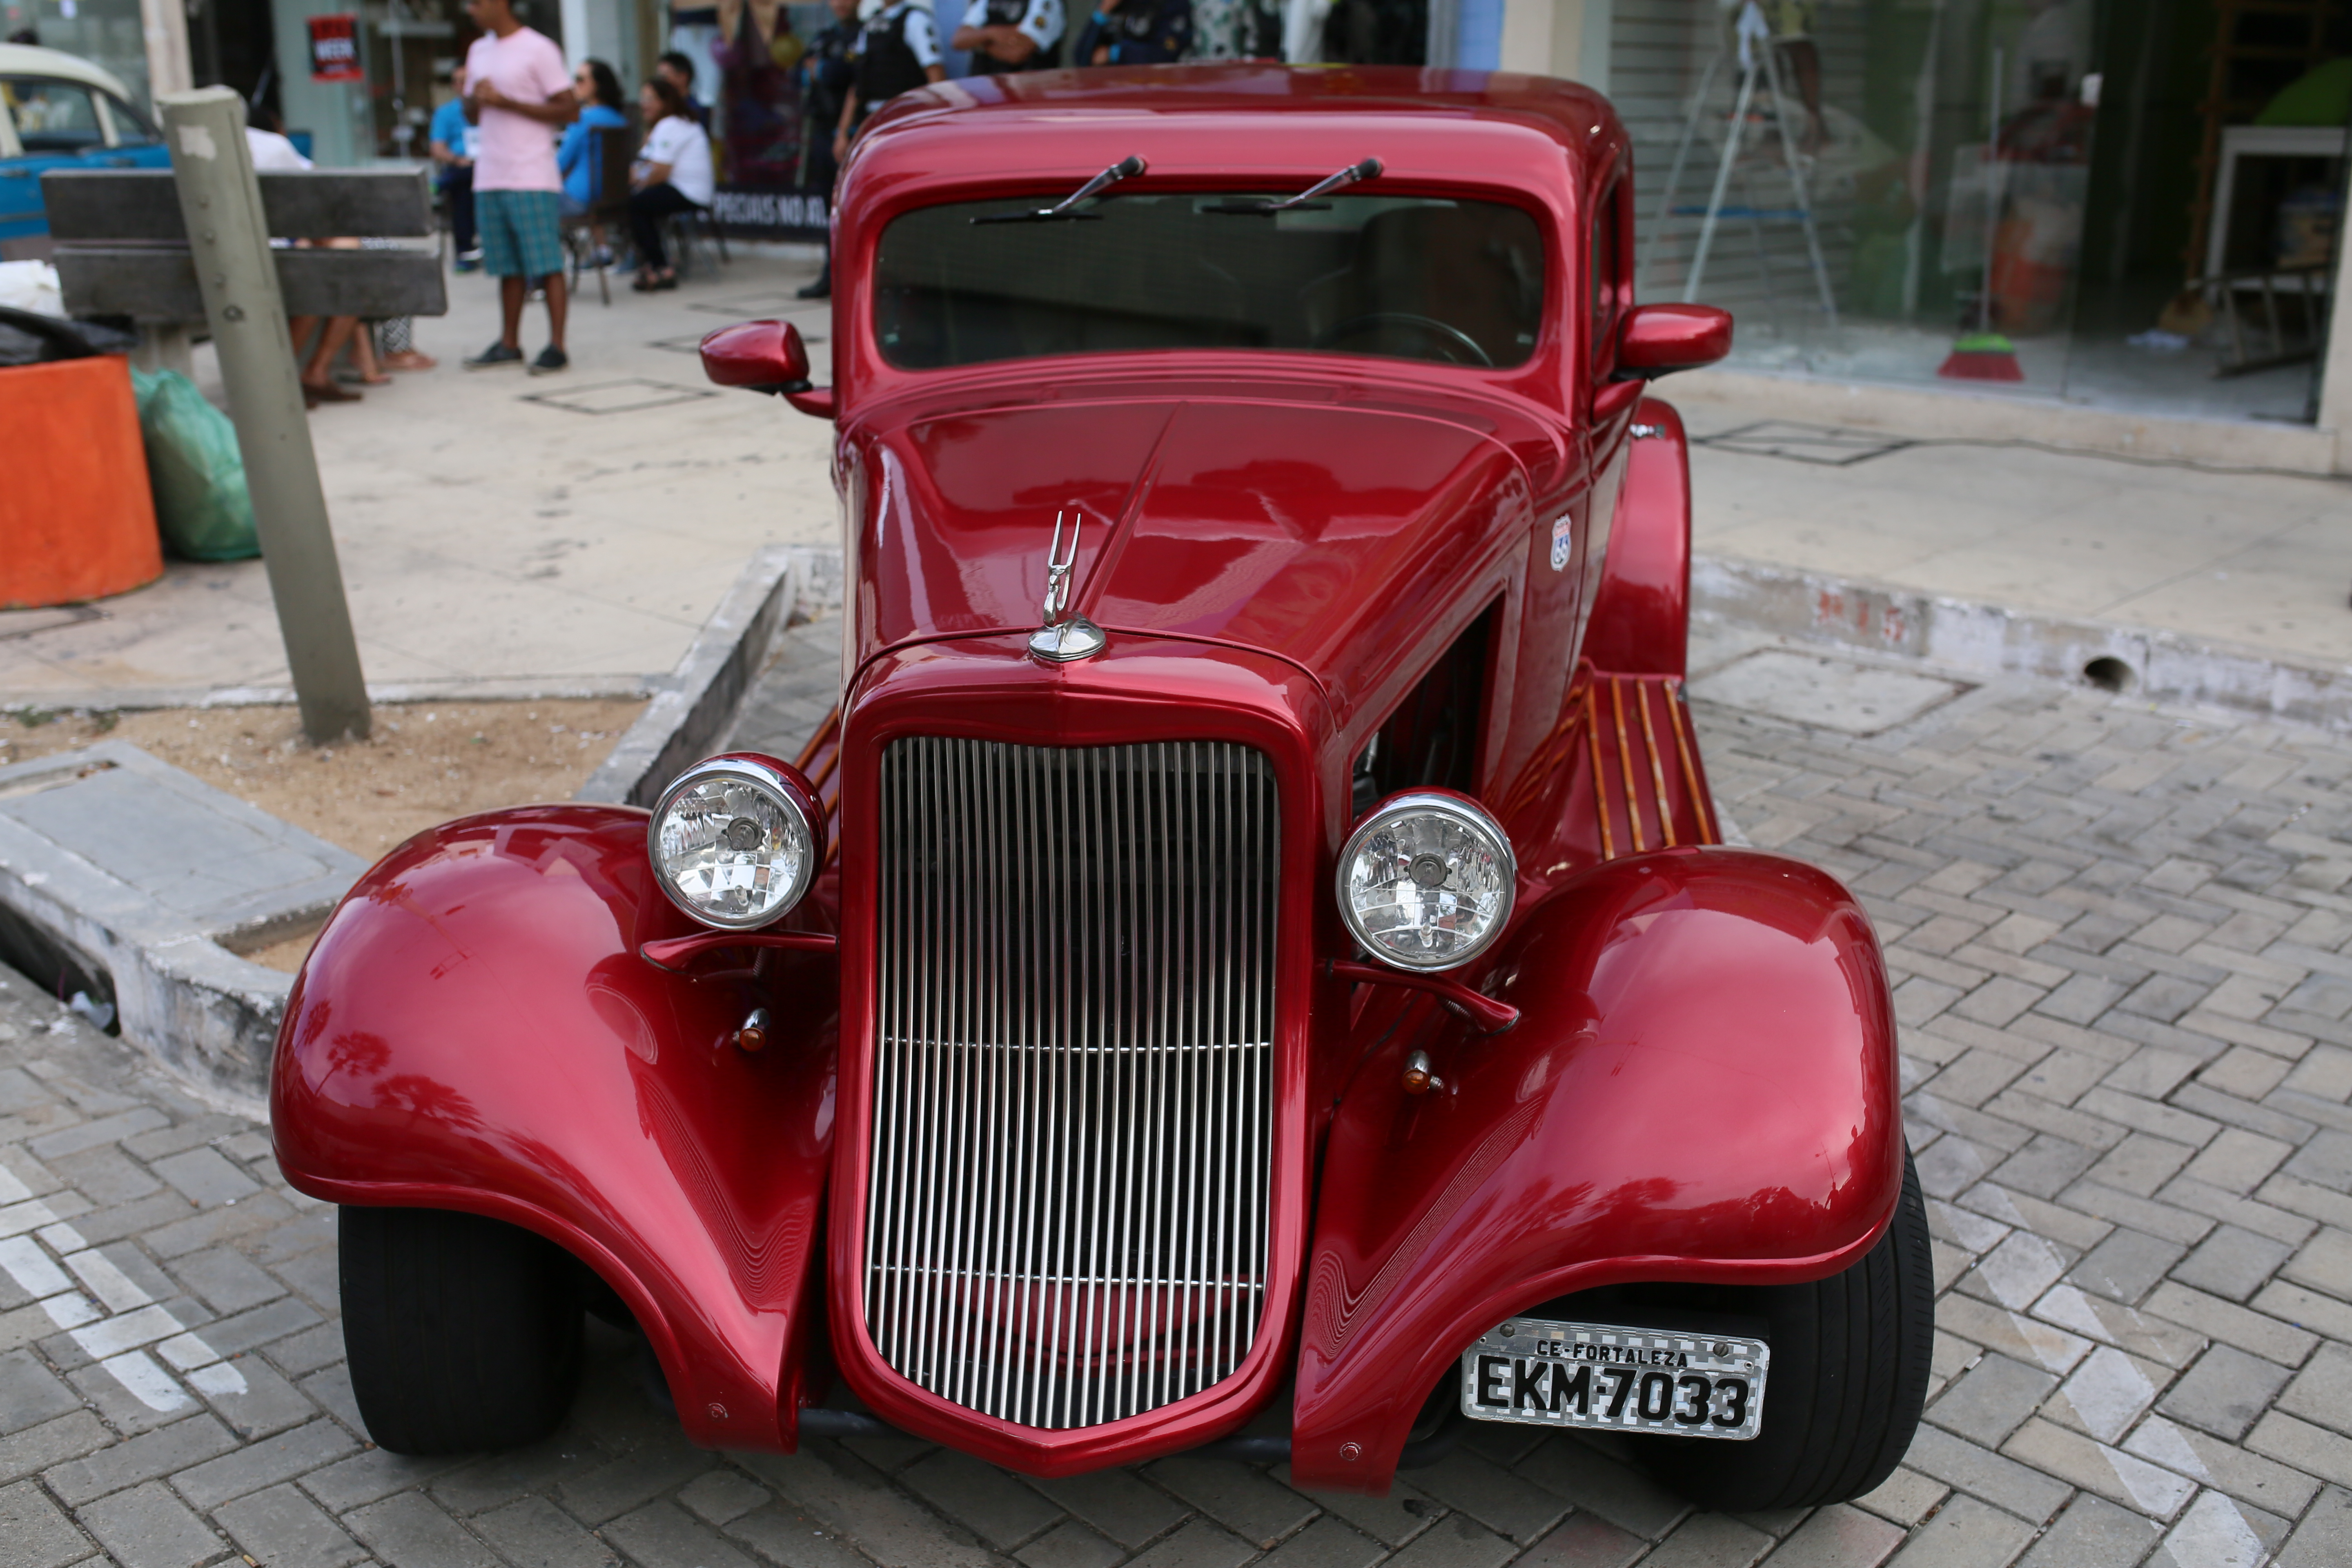 Prefeitura promove exposição de carros antigos na Praia de Iracema